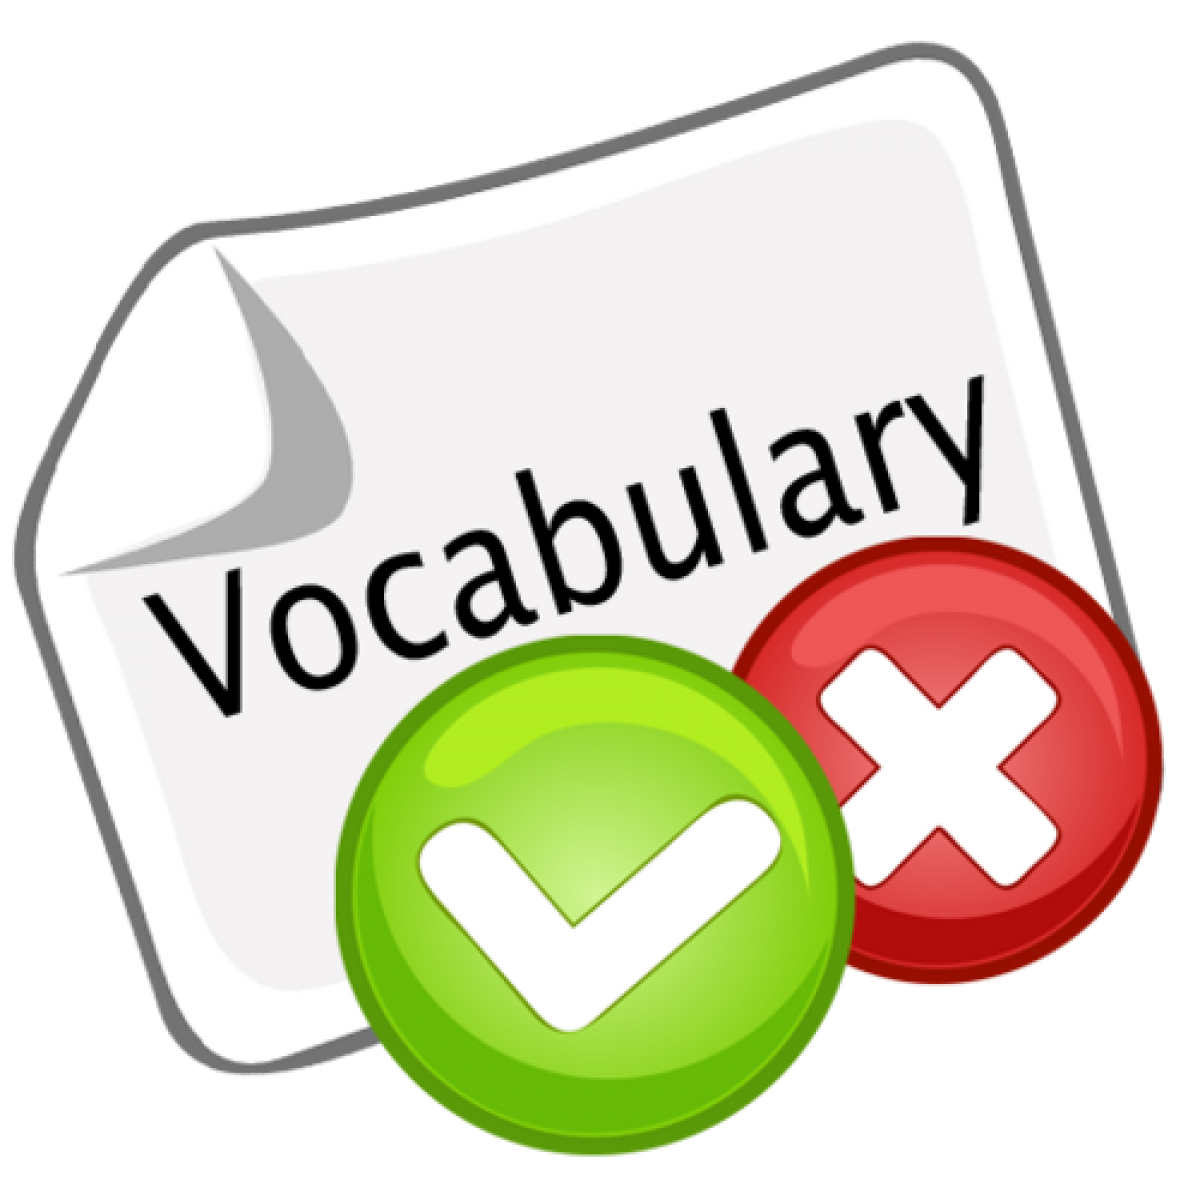 Dictionary clipart vocabulary test, Dictionary vocabulary